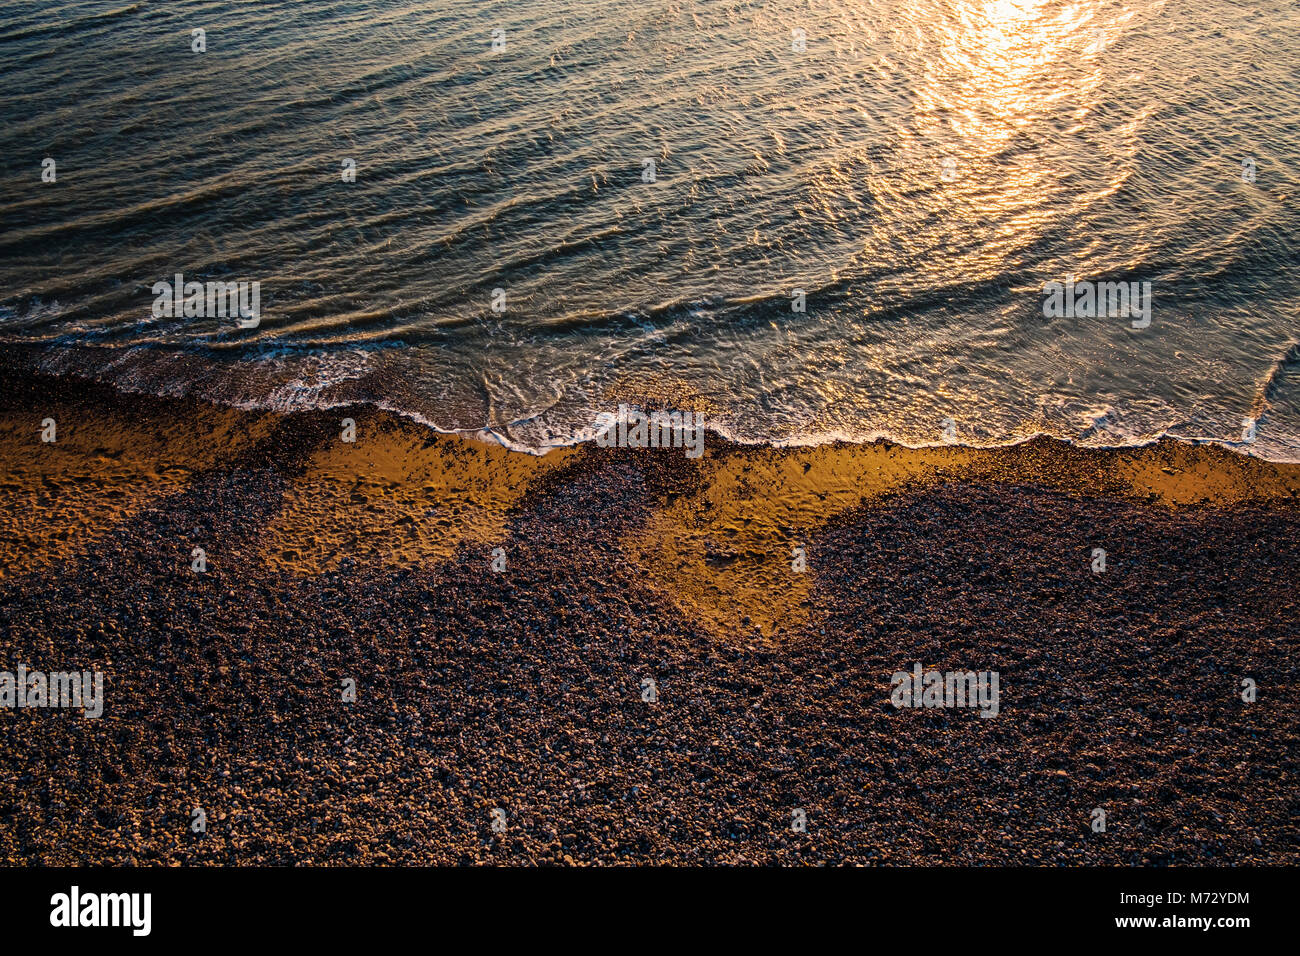 Coucher du soleil à la plage près de la sept Sœurs, Jalhay, East Sussex, Angleterre Banque D'Images